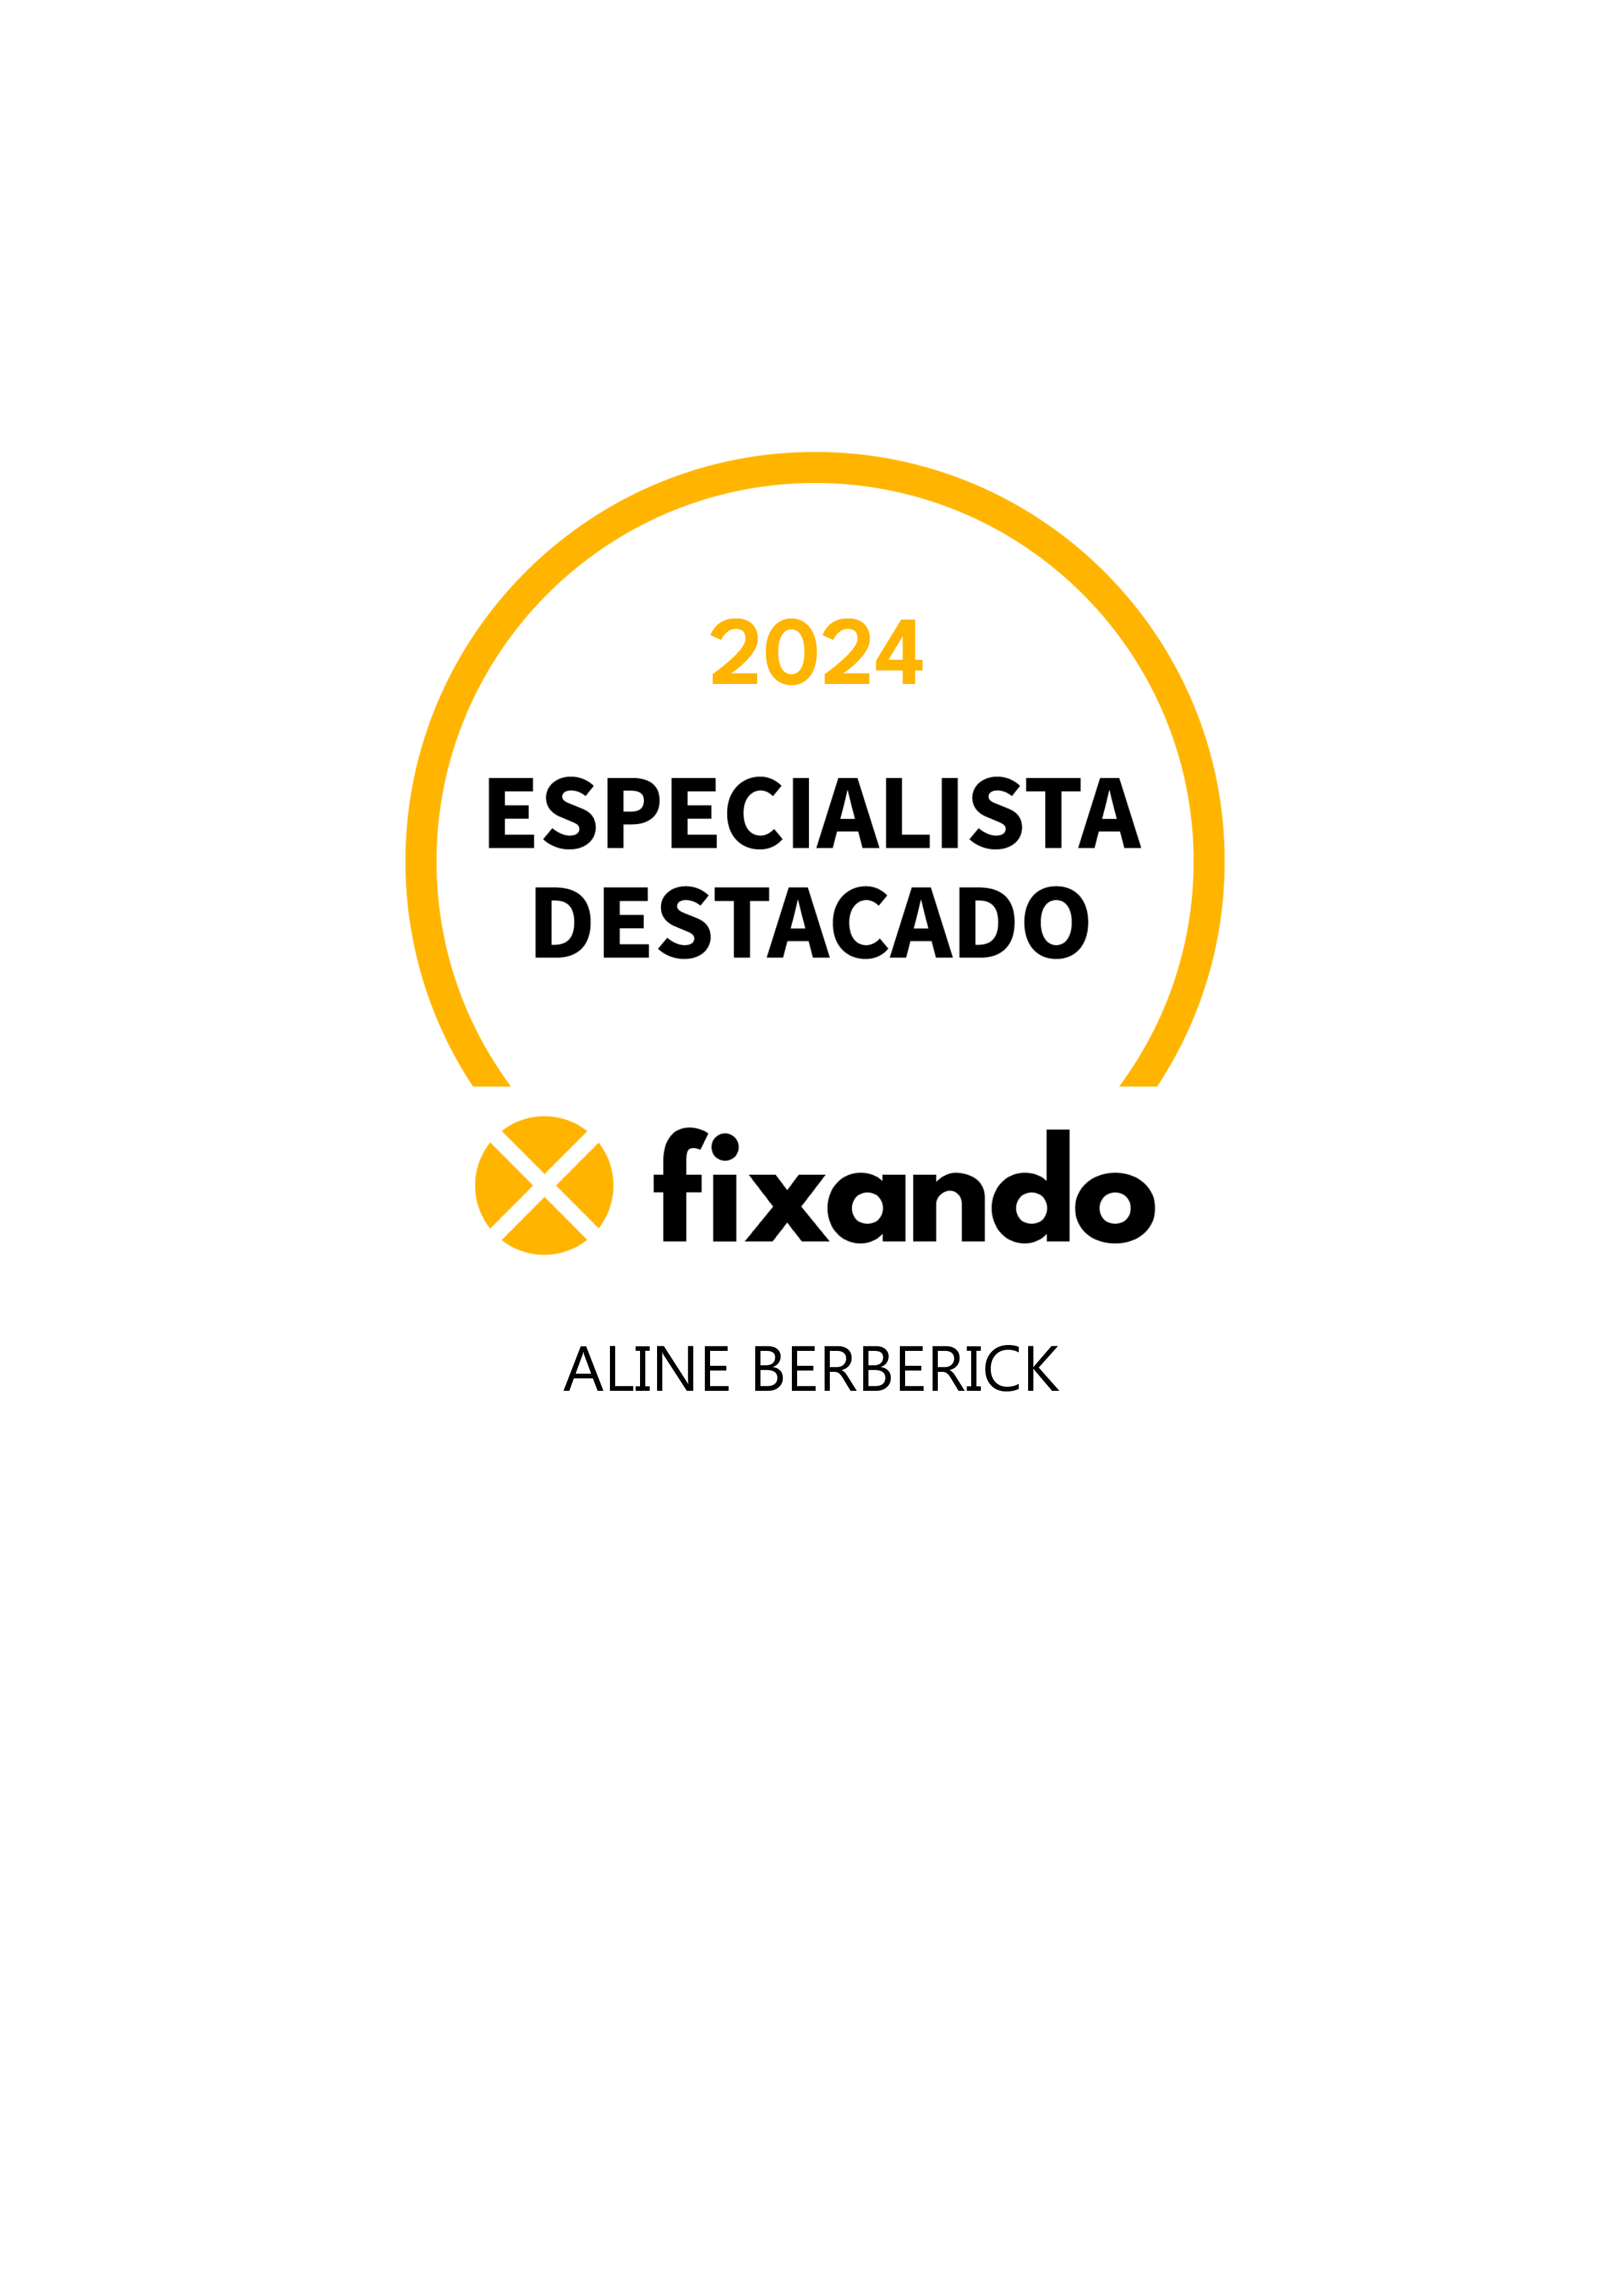 Aline Berberick - Faro - Instalação de Pavimento em Pedra ou Ladrilho